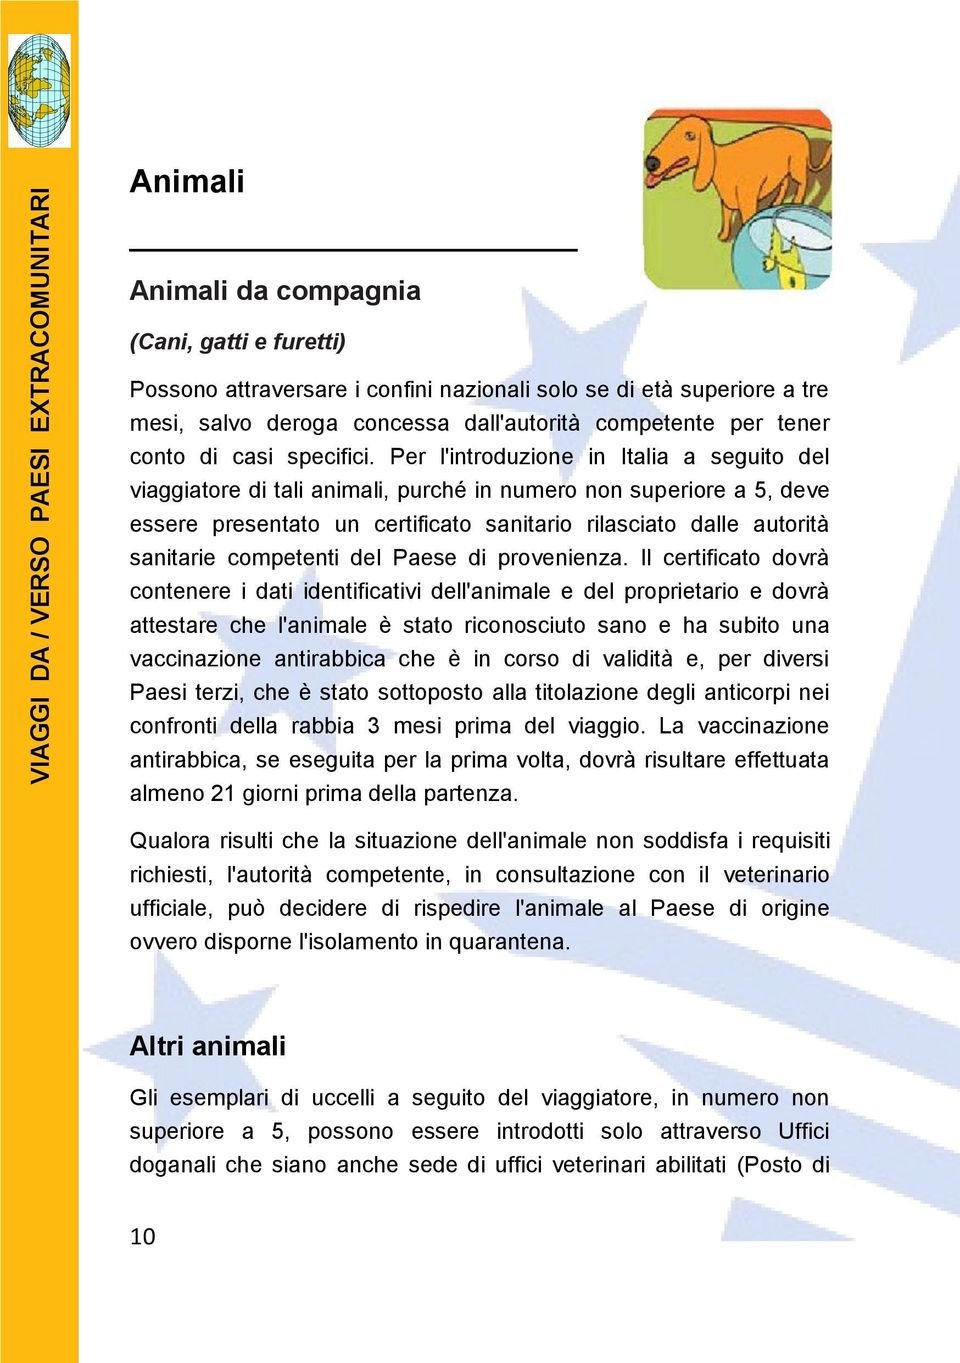 Per l'introduzione in Italia a seguito del viaggiatore di tali animali, purché in numero non superiore a 5, deve essere presentato un certificato sanitario rilasciato dalle autorità sanitarie